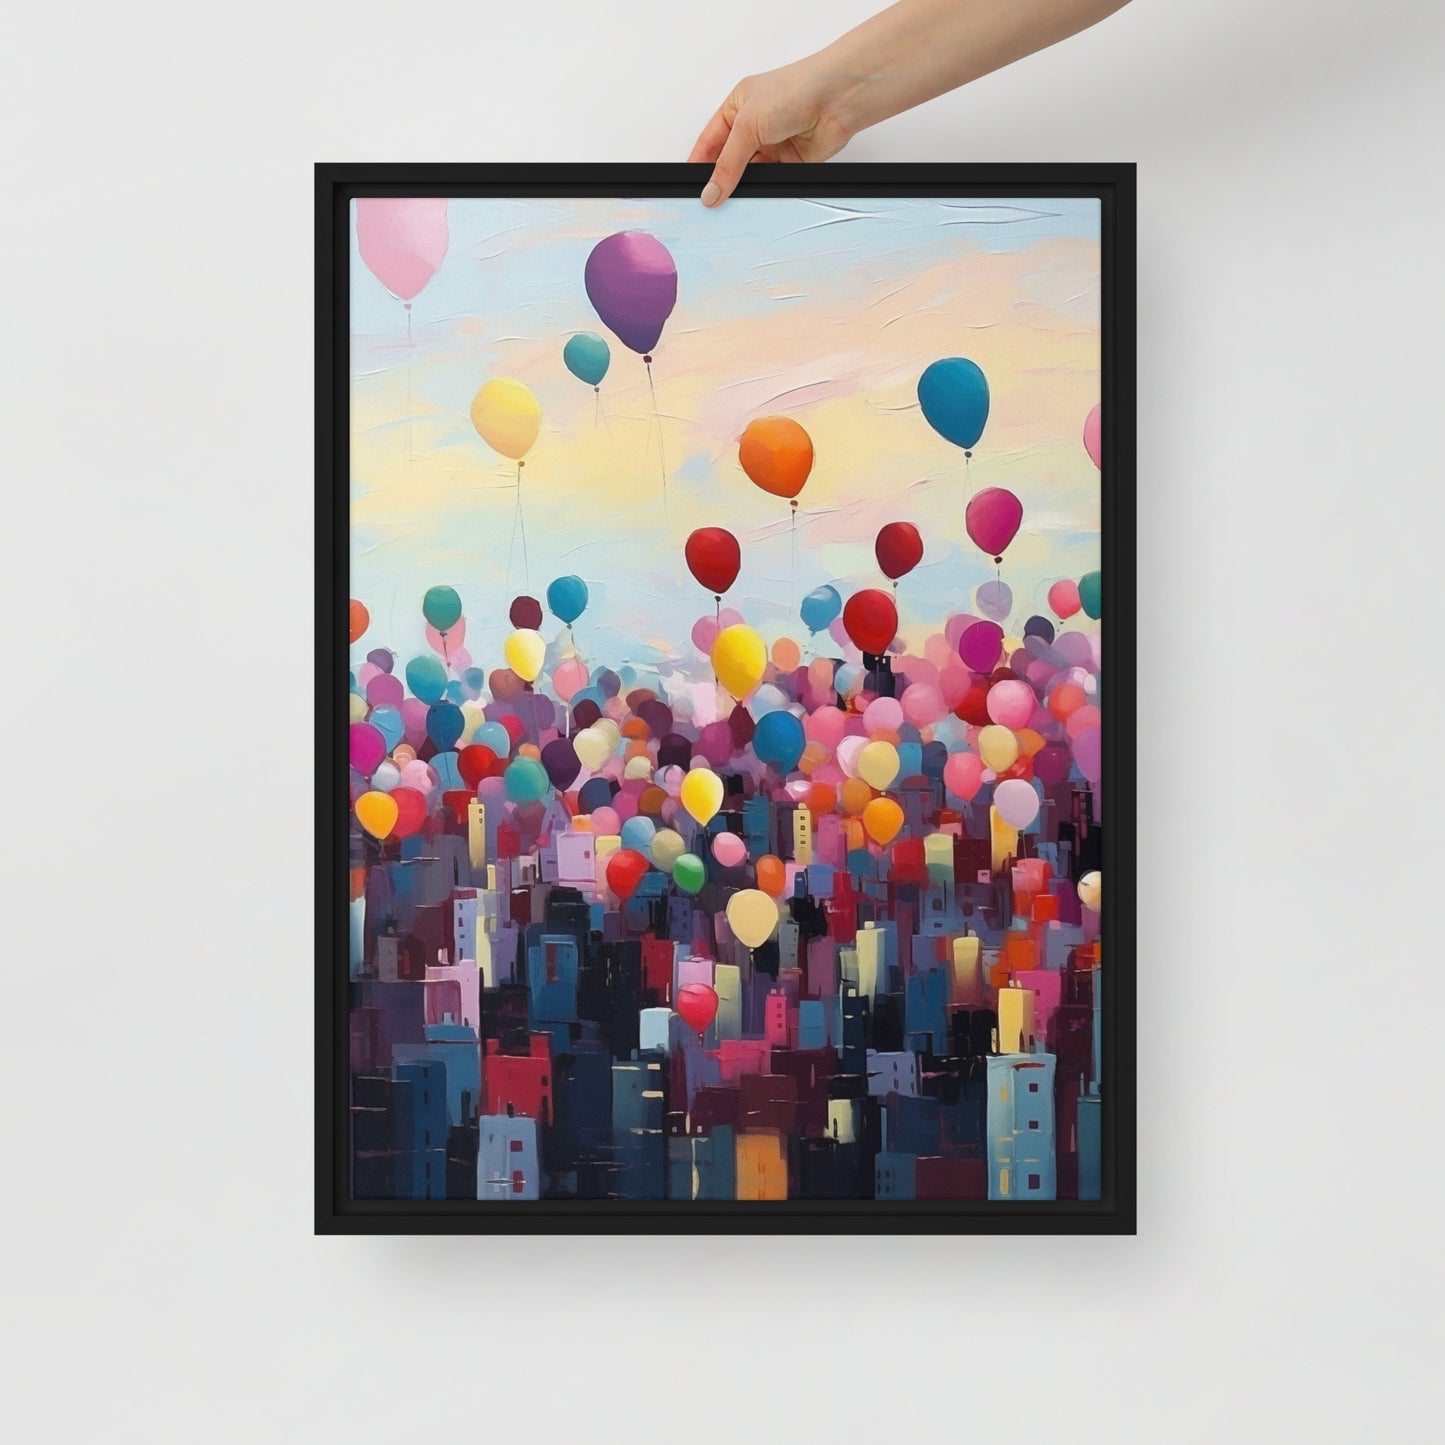 Balloons above a city